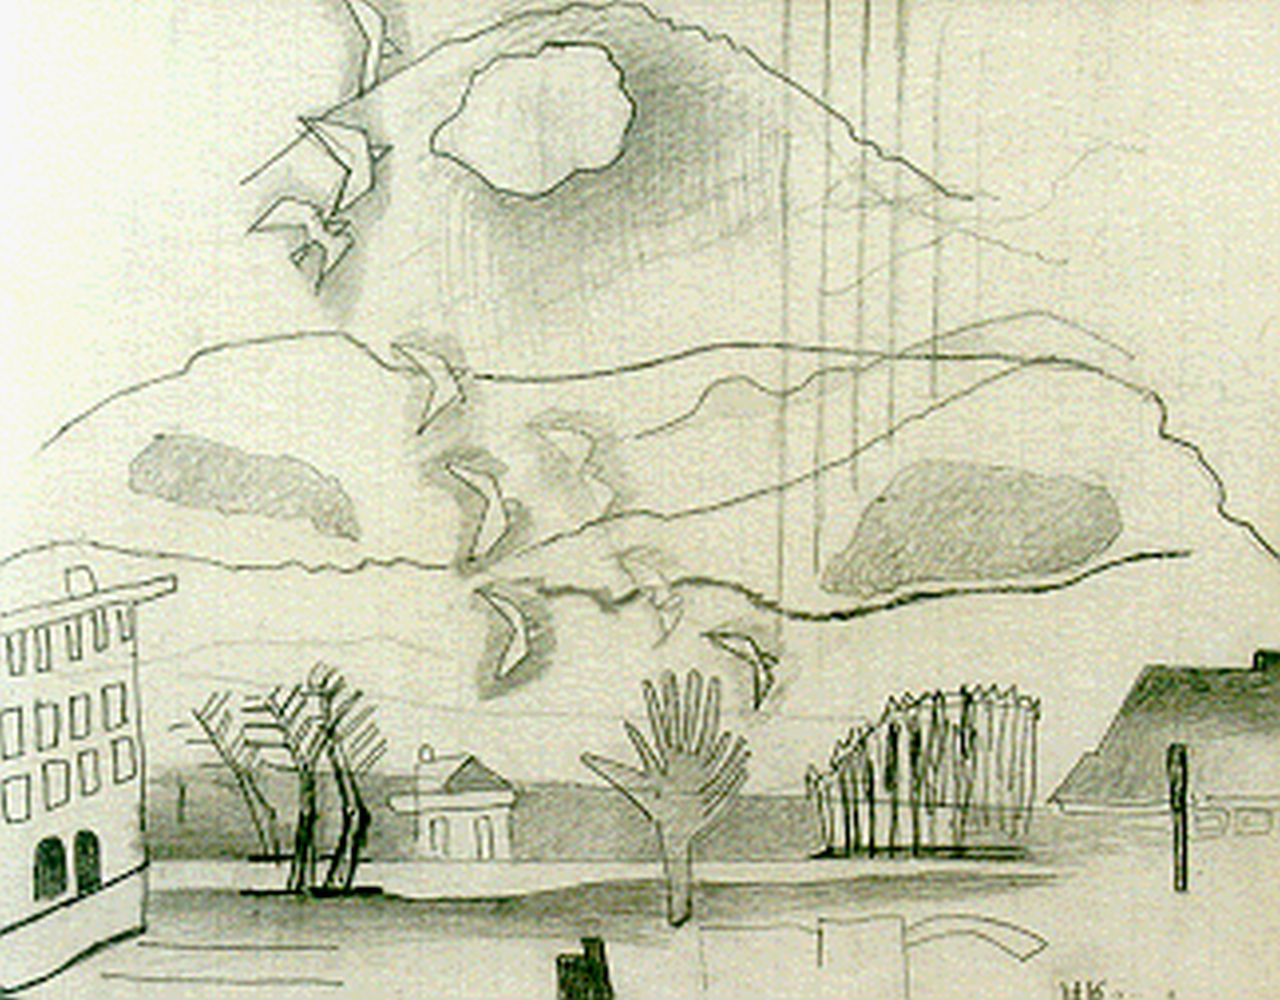 Kruyder H.J.  | 'Herman' Justus Kruyder, Landscape with birds, pencil on paper 19.7 x 24.8 cm, signed l.r.